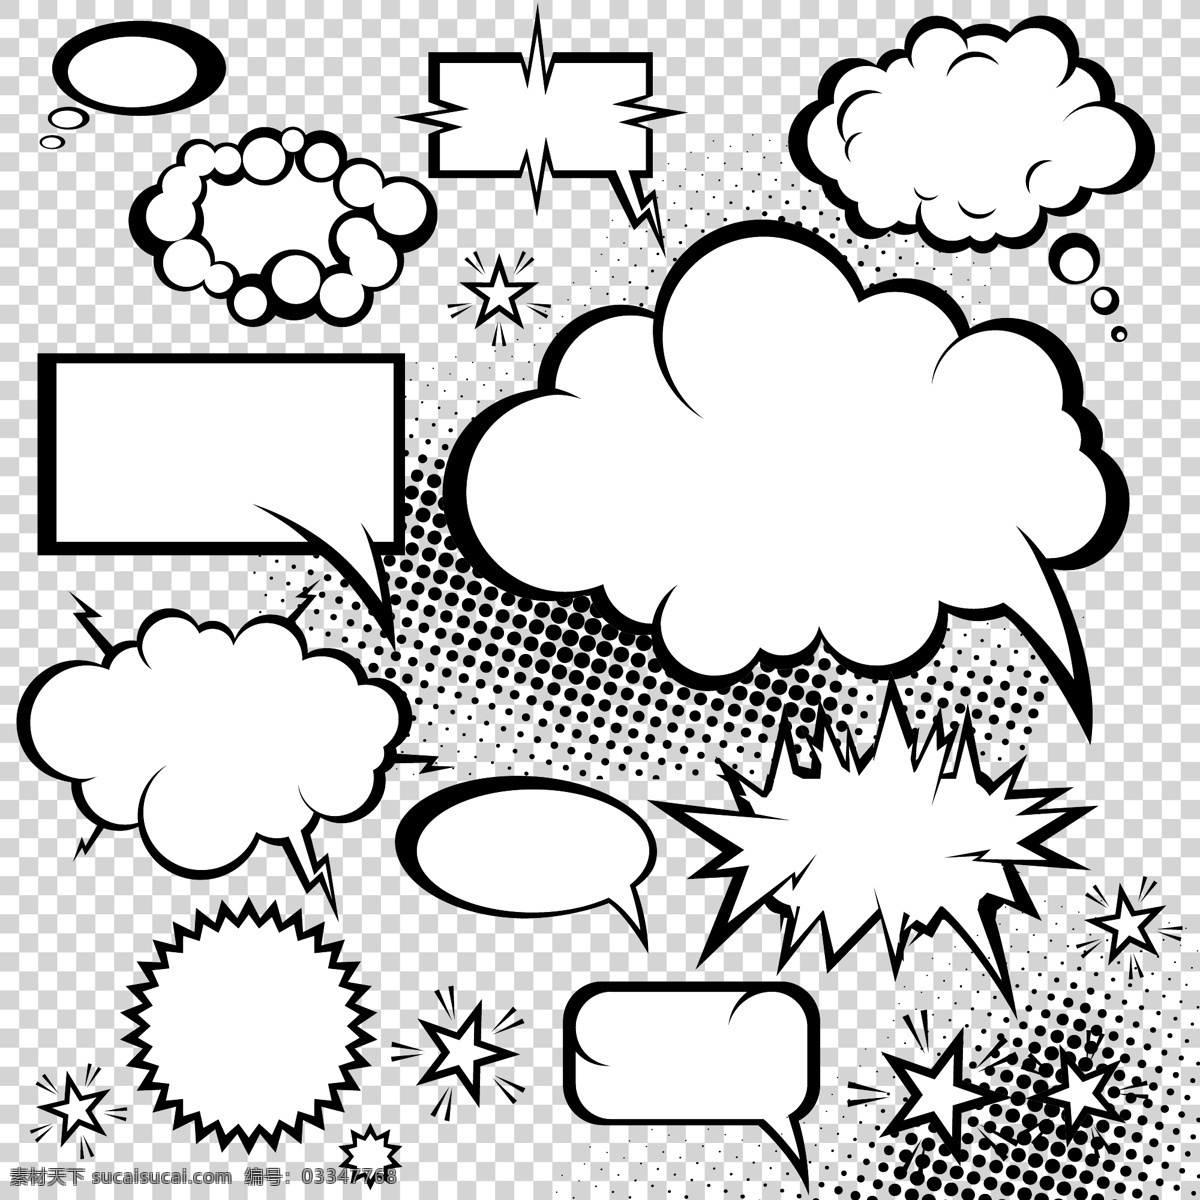 对话 泡泡 矢量 对话框 对话泡泡 卡通 漫画 爆炸 云朵 贴纸 标签 色块 图形 形状 图标 logo 讨论 评论 矢量素材 矢量图标 小图标 标识标志图标